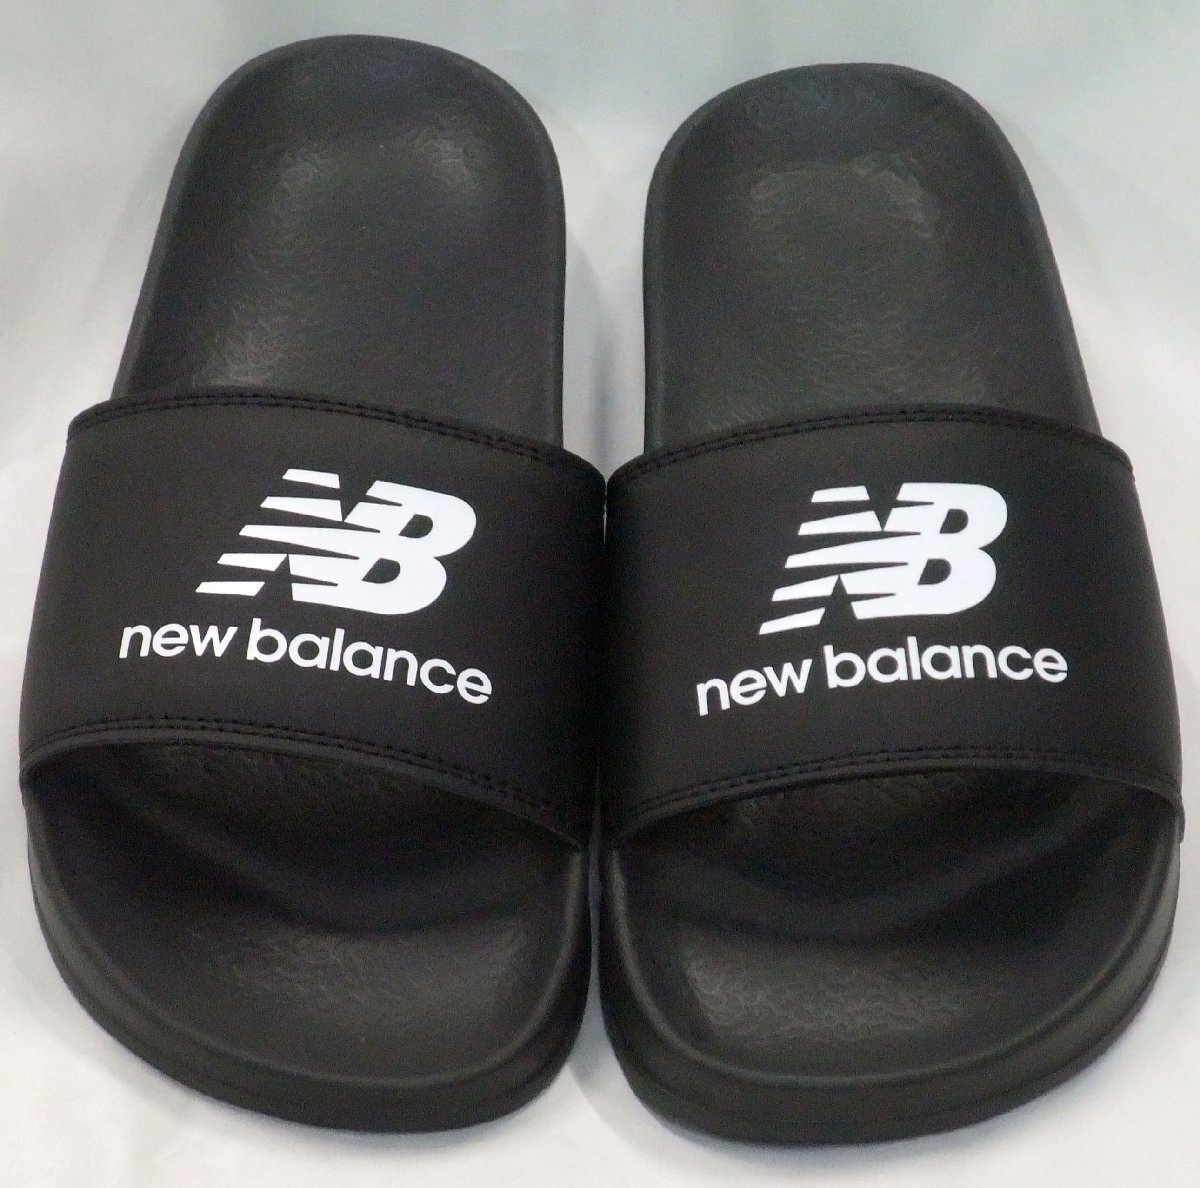  бесплатная доставка new balance New balance SUF050 E2 шлепанцы для душа черный / белый 25.0cm after спорт скользящий сандалии салон надеть обувь 